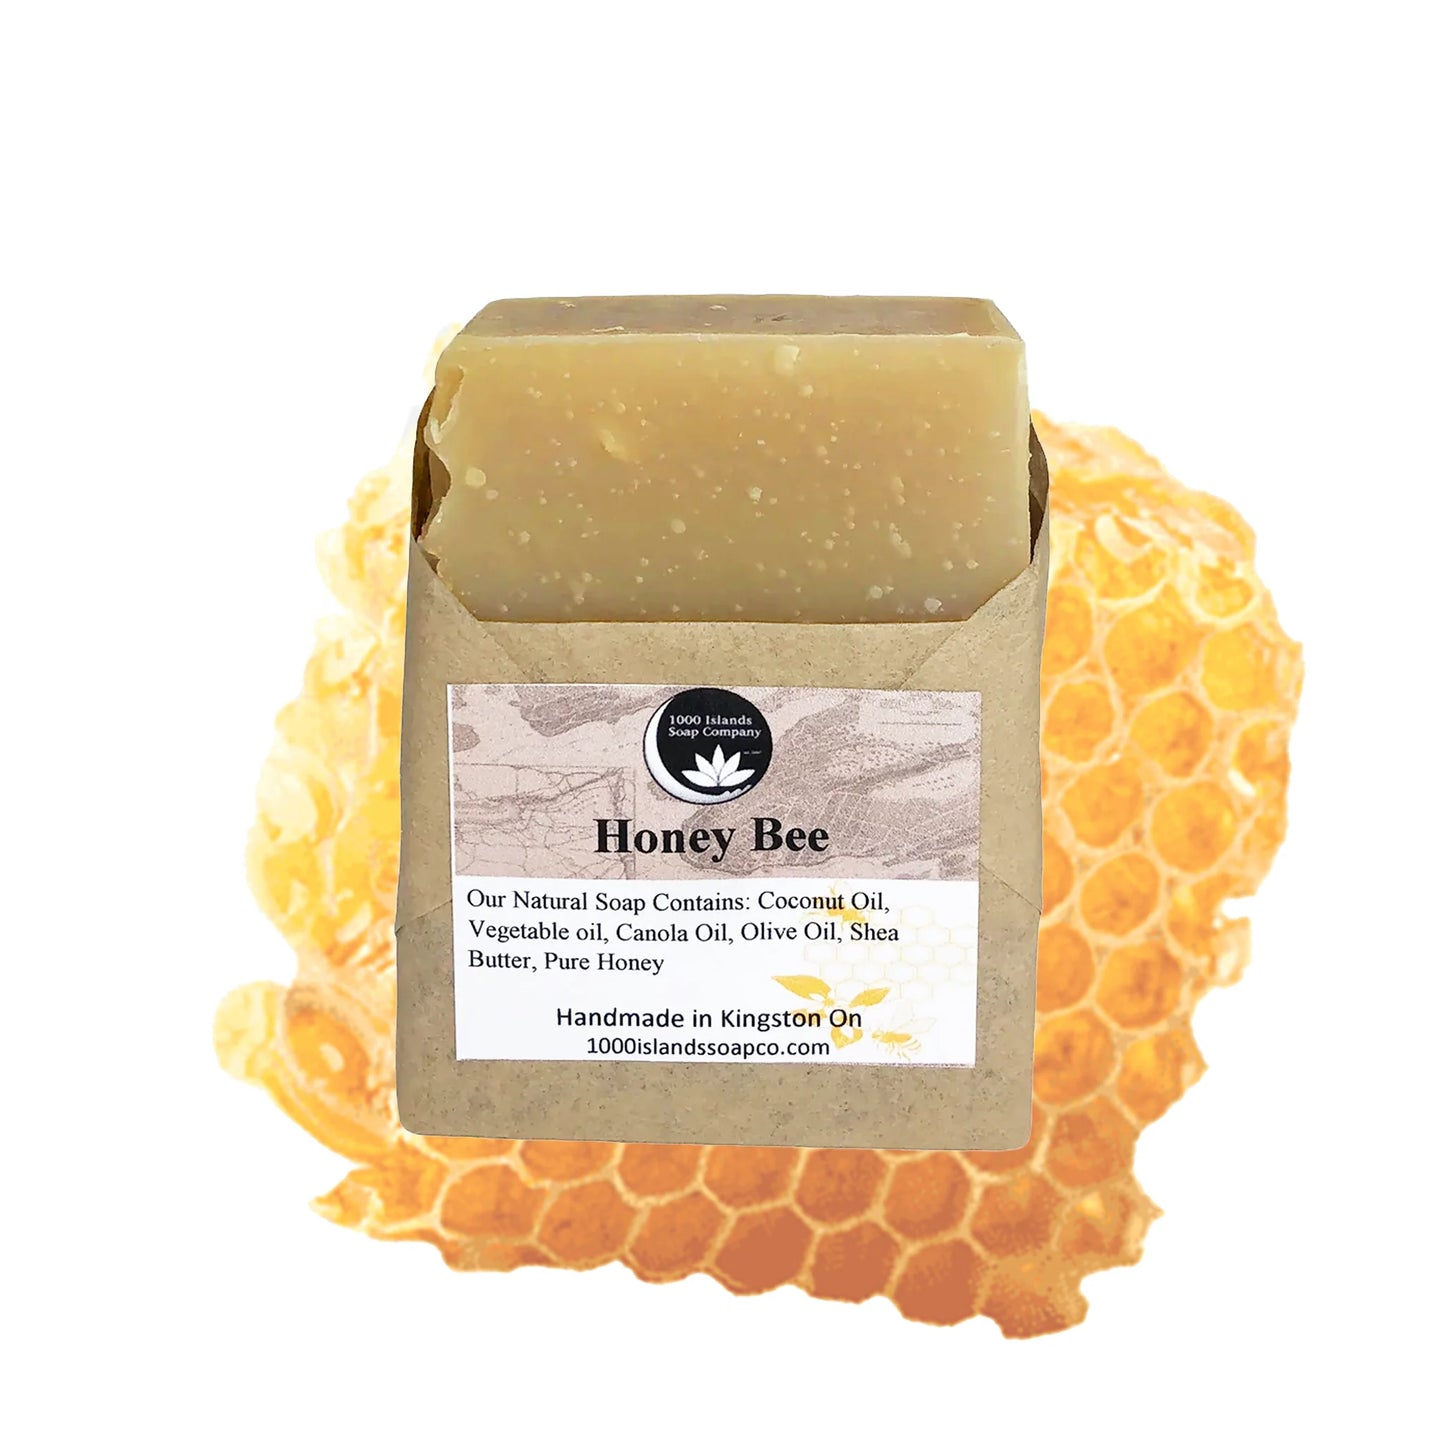 Honey Bee Natural Soap Bar